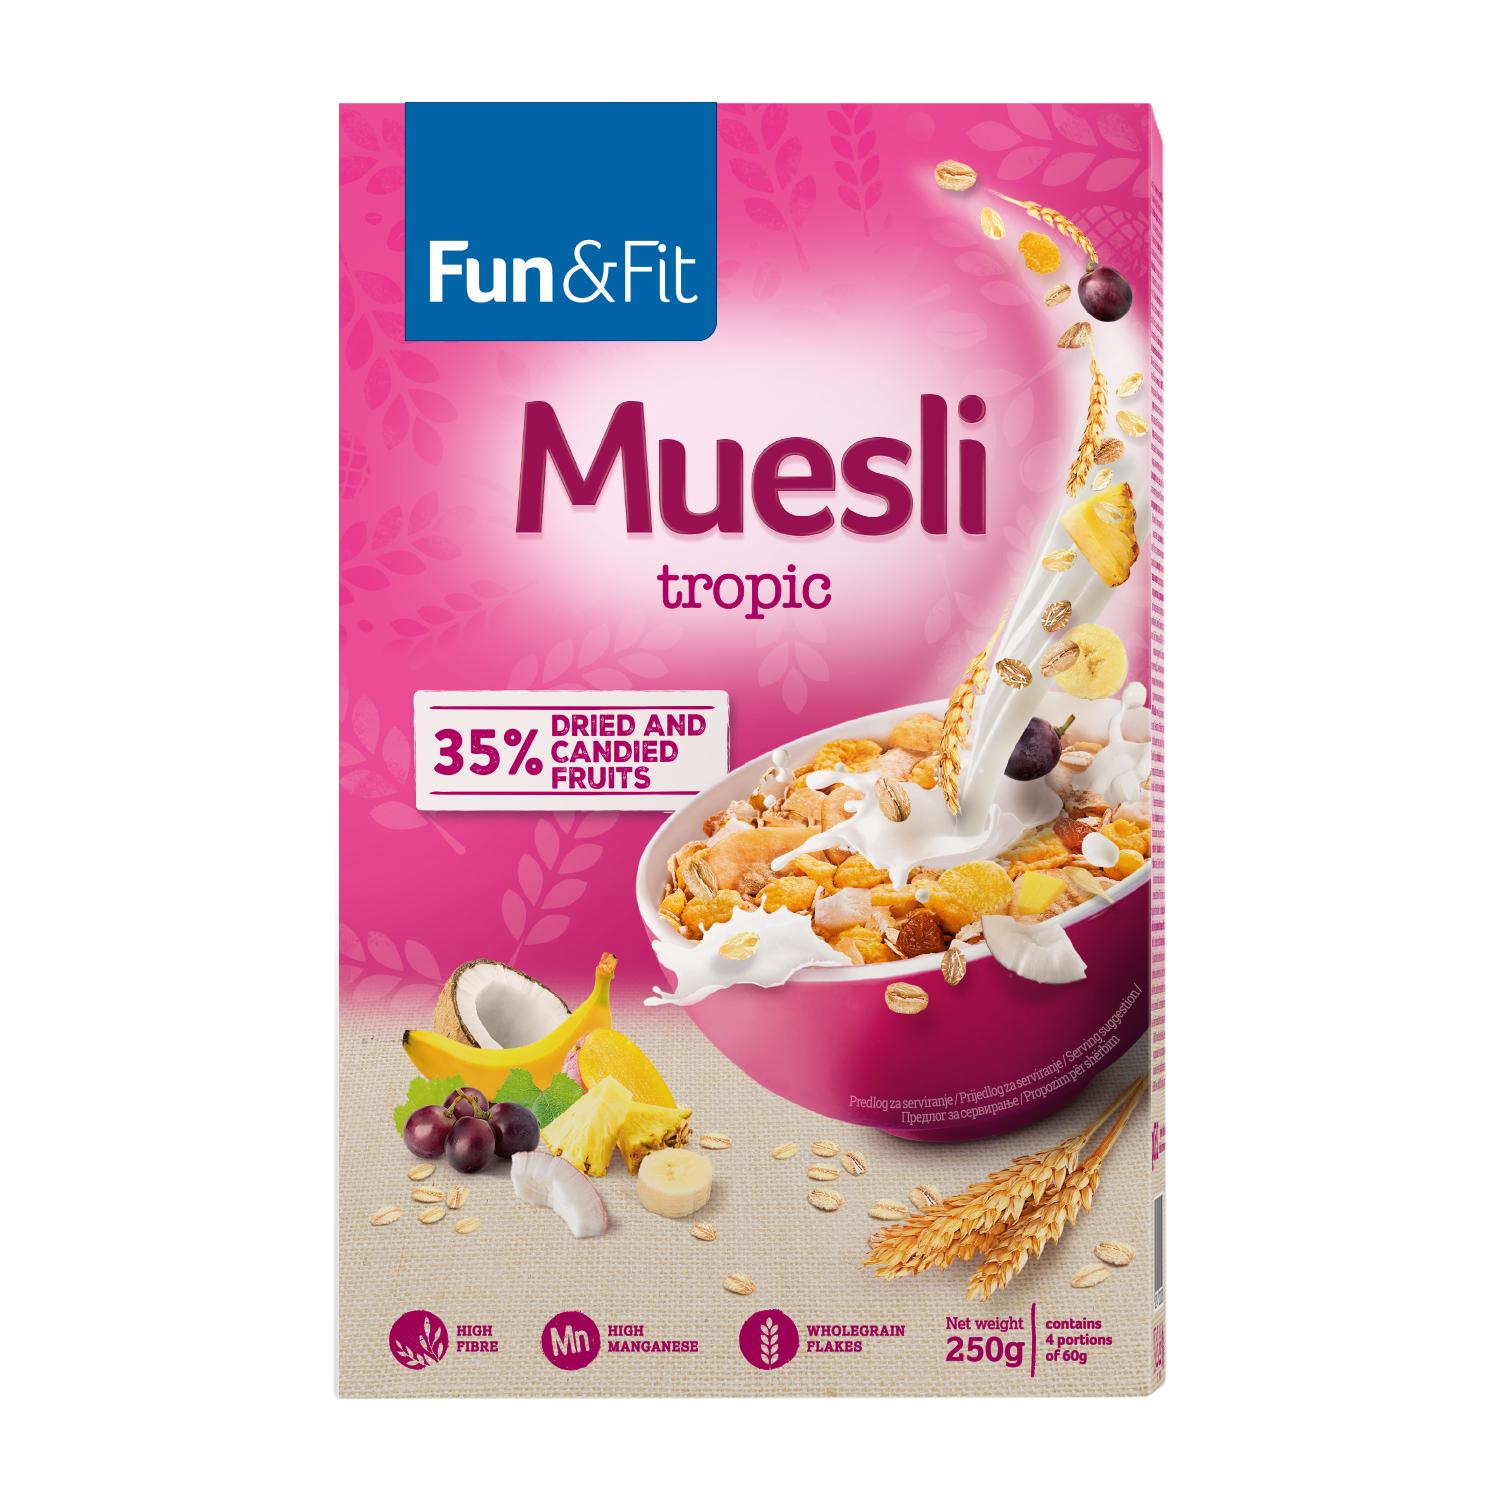 Selected image for FUN&FIT Muesli tropic 1kg